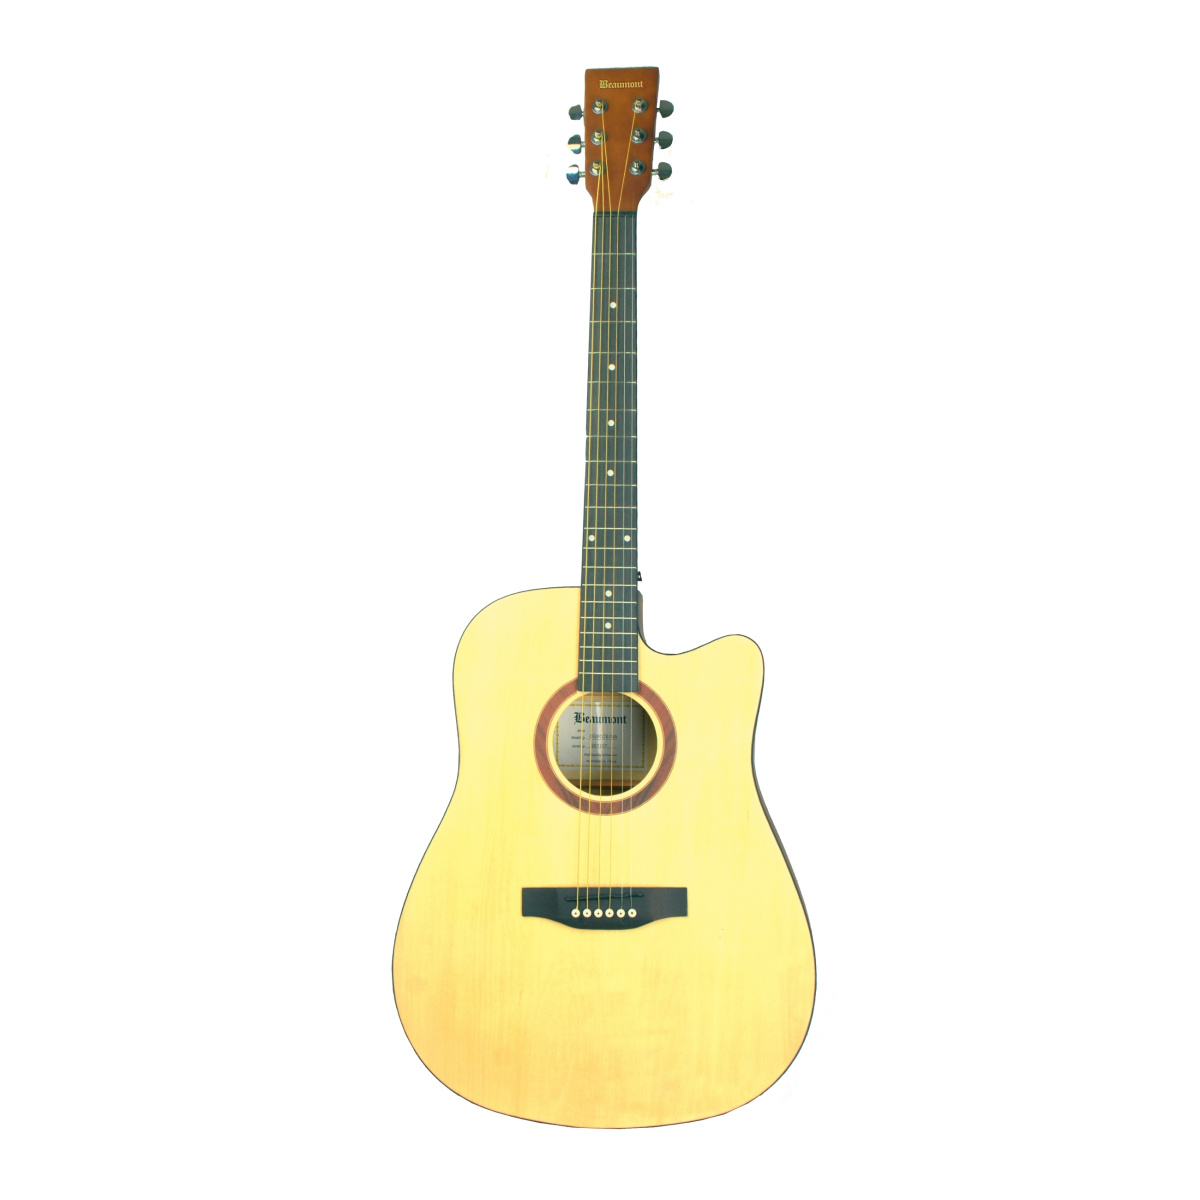 Beaumont DG80CE/NA электроакустическая гитара с вырезом. NEOPIX.RU - интернет-магазин